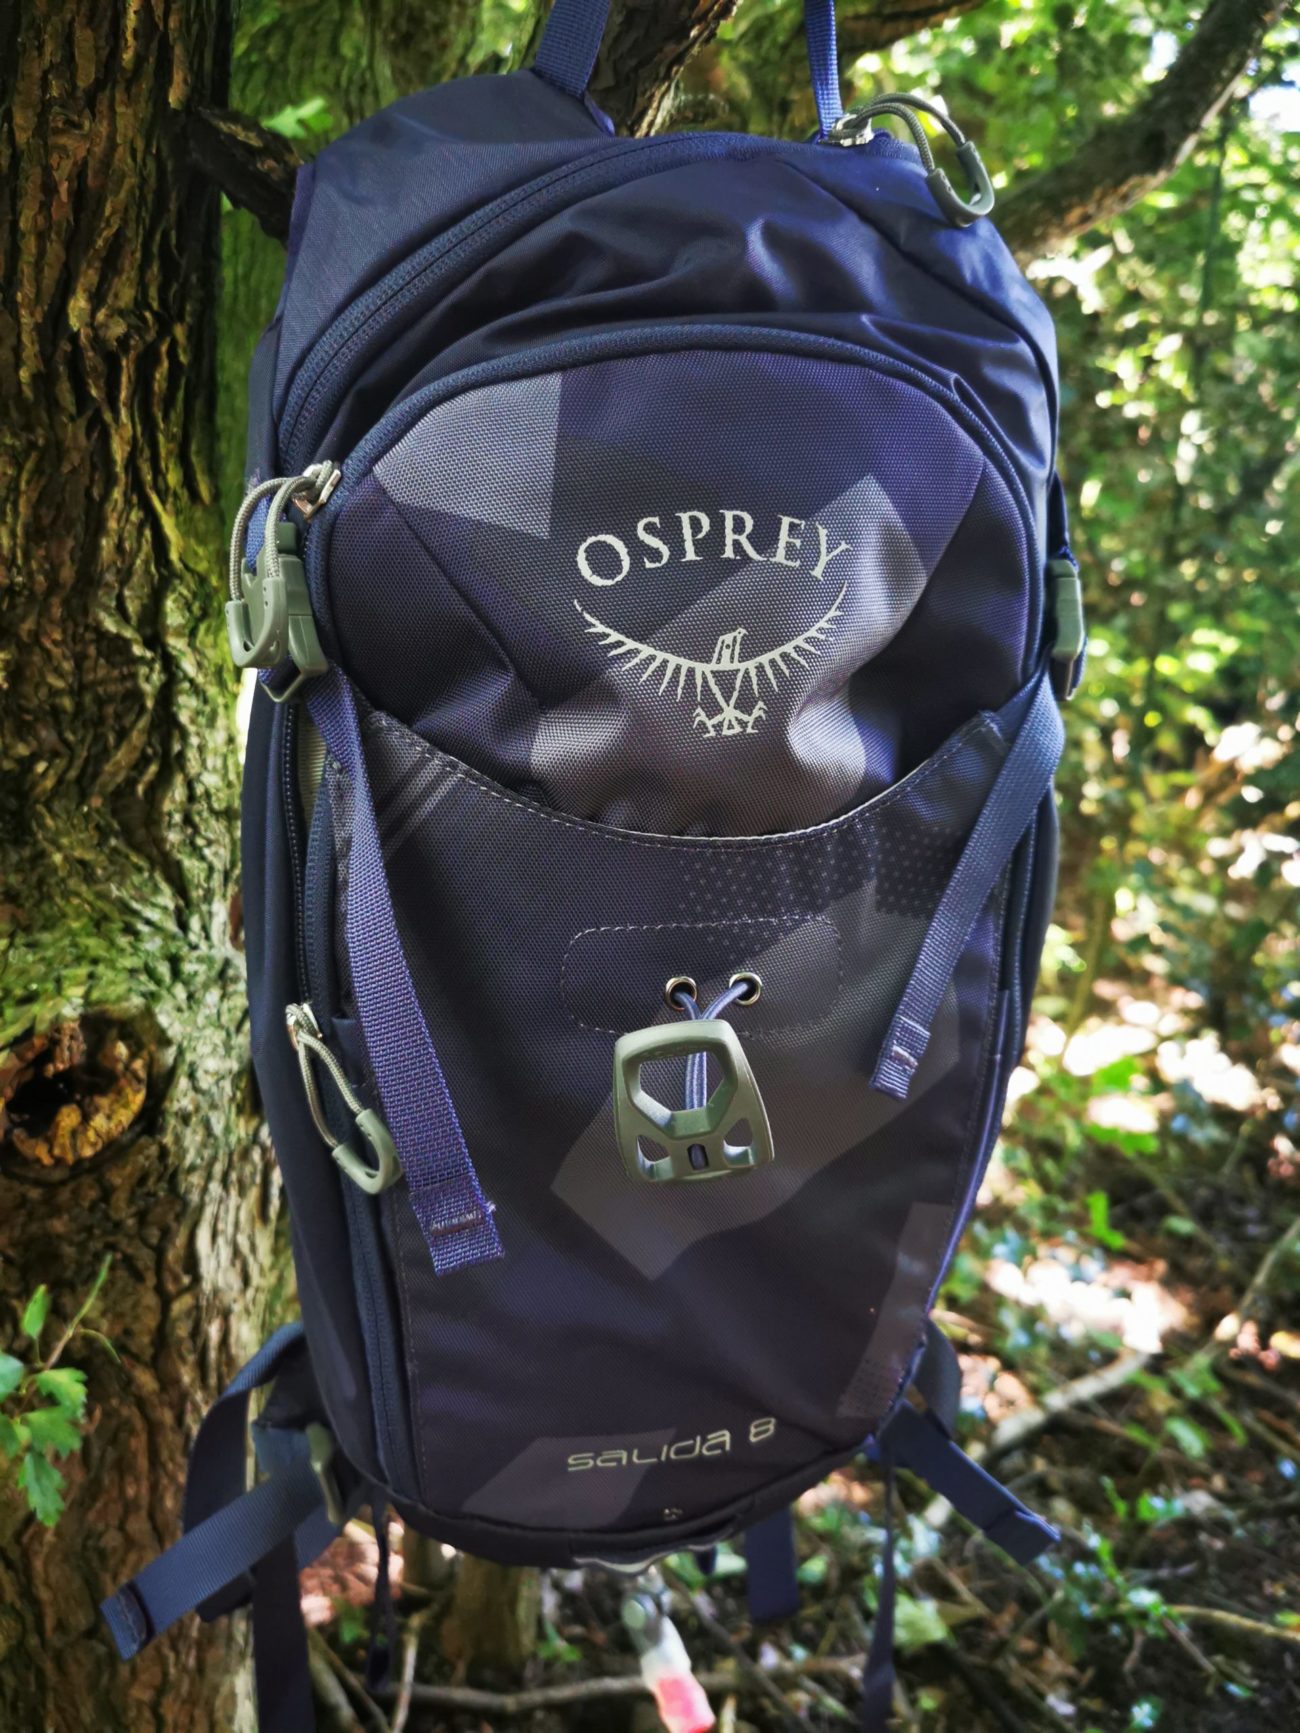 Osprey Salida 8 Hydration Backpack